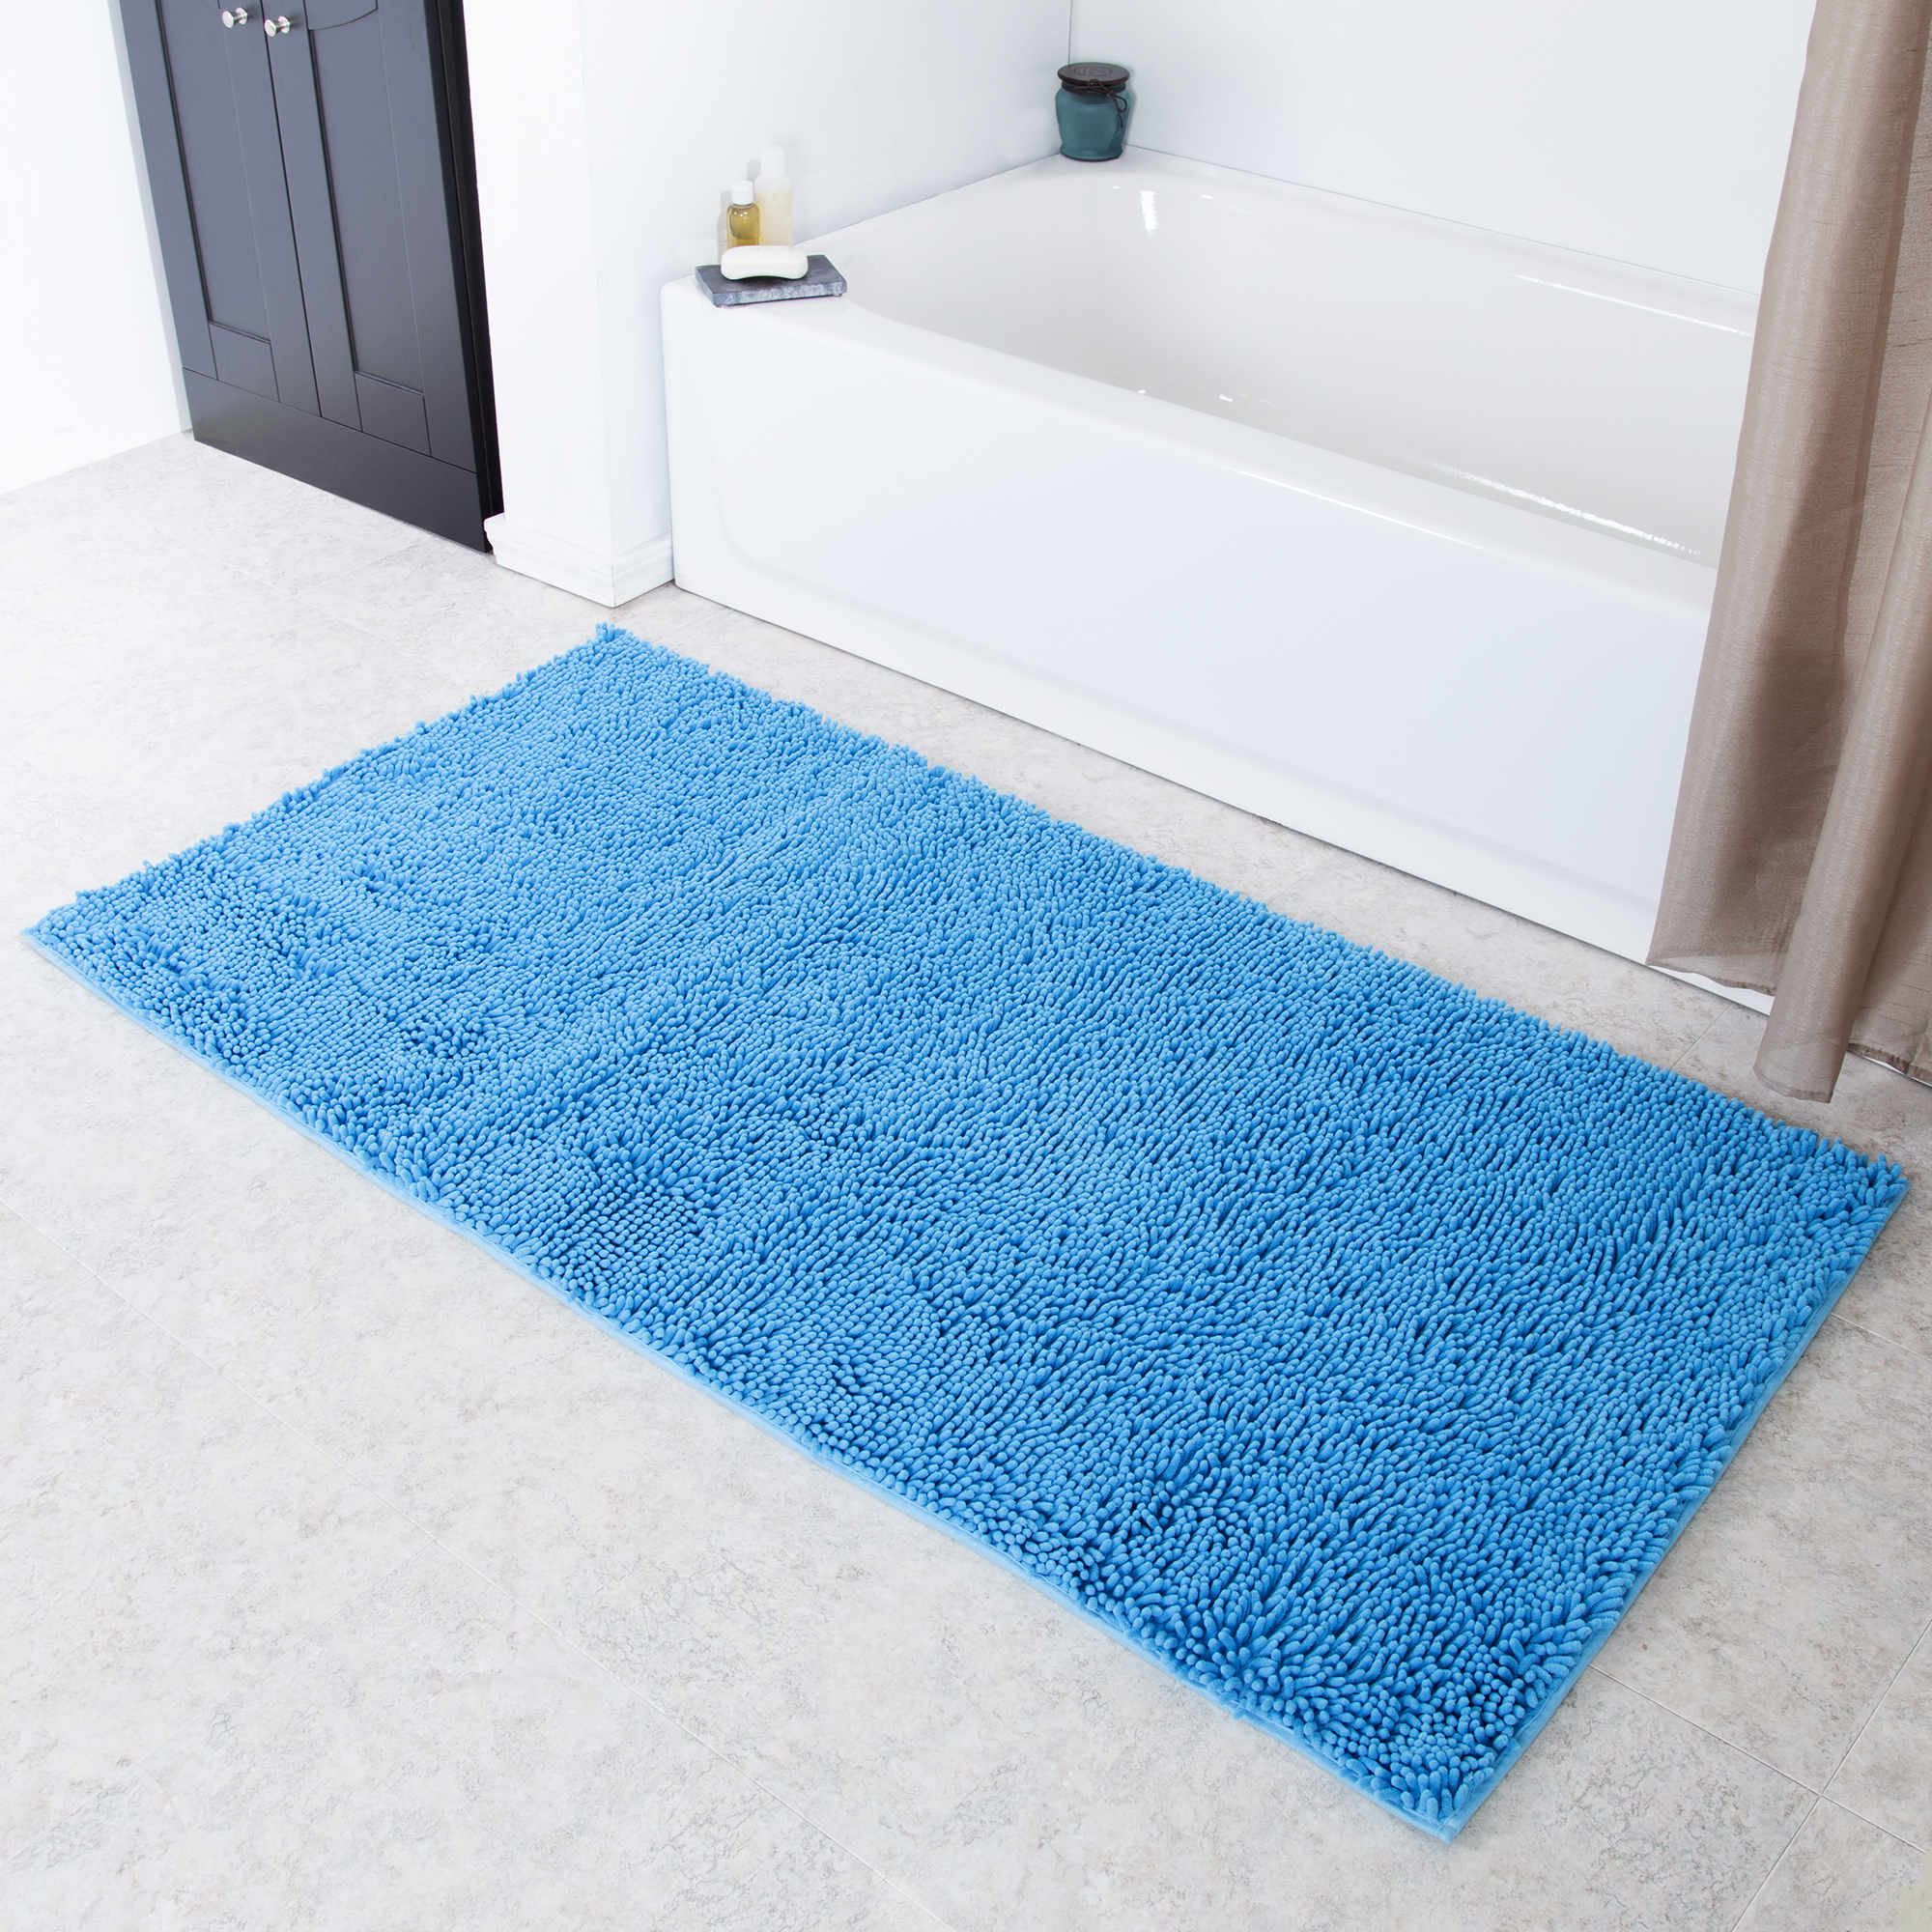 Lavish Home High Pile Shag Rug Carpet - Blue - 30x60 Bath Mat